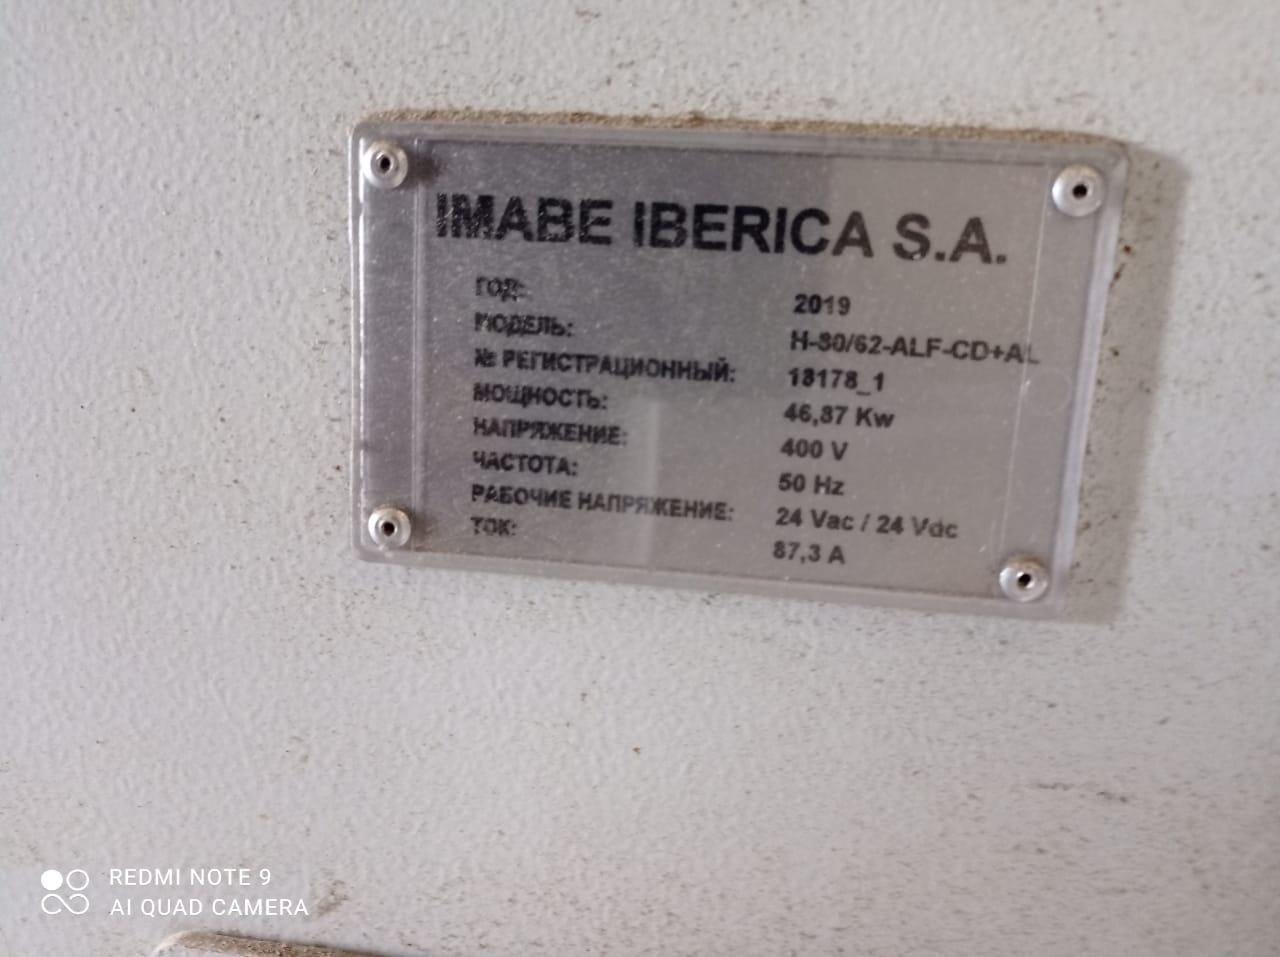 Горизонтальный пресс IMABE IBERICA H-80/62-ALF-CD+AL